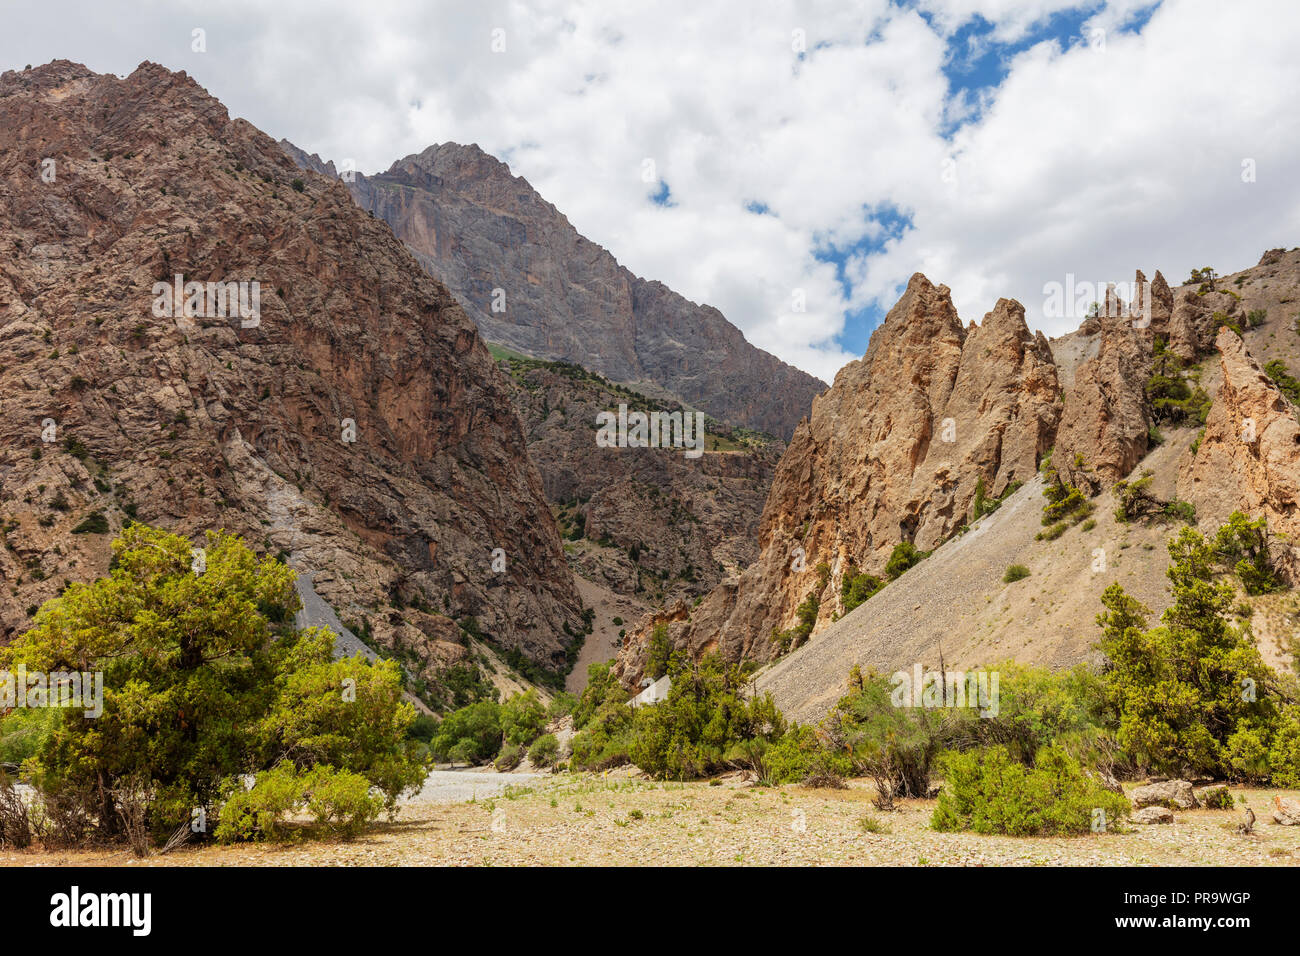 Central Asia, Tajikistan, Fan mountains, Stock Photo